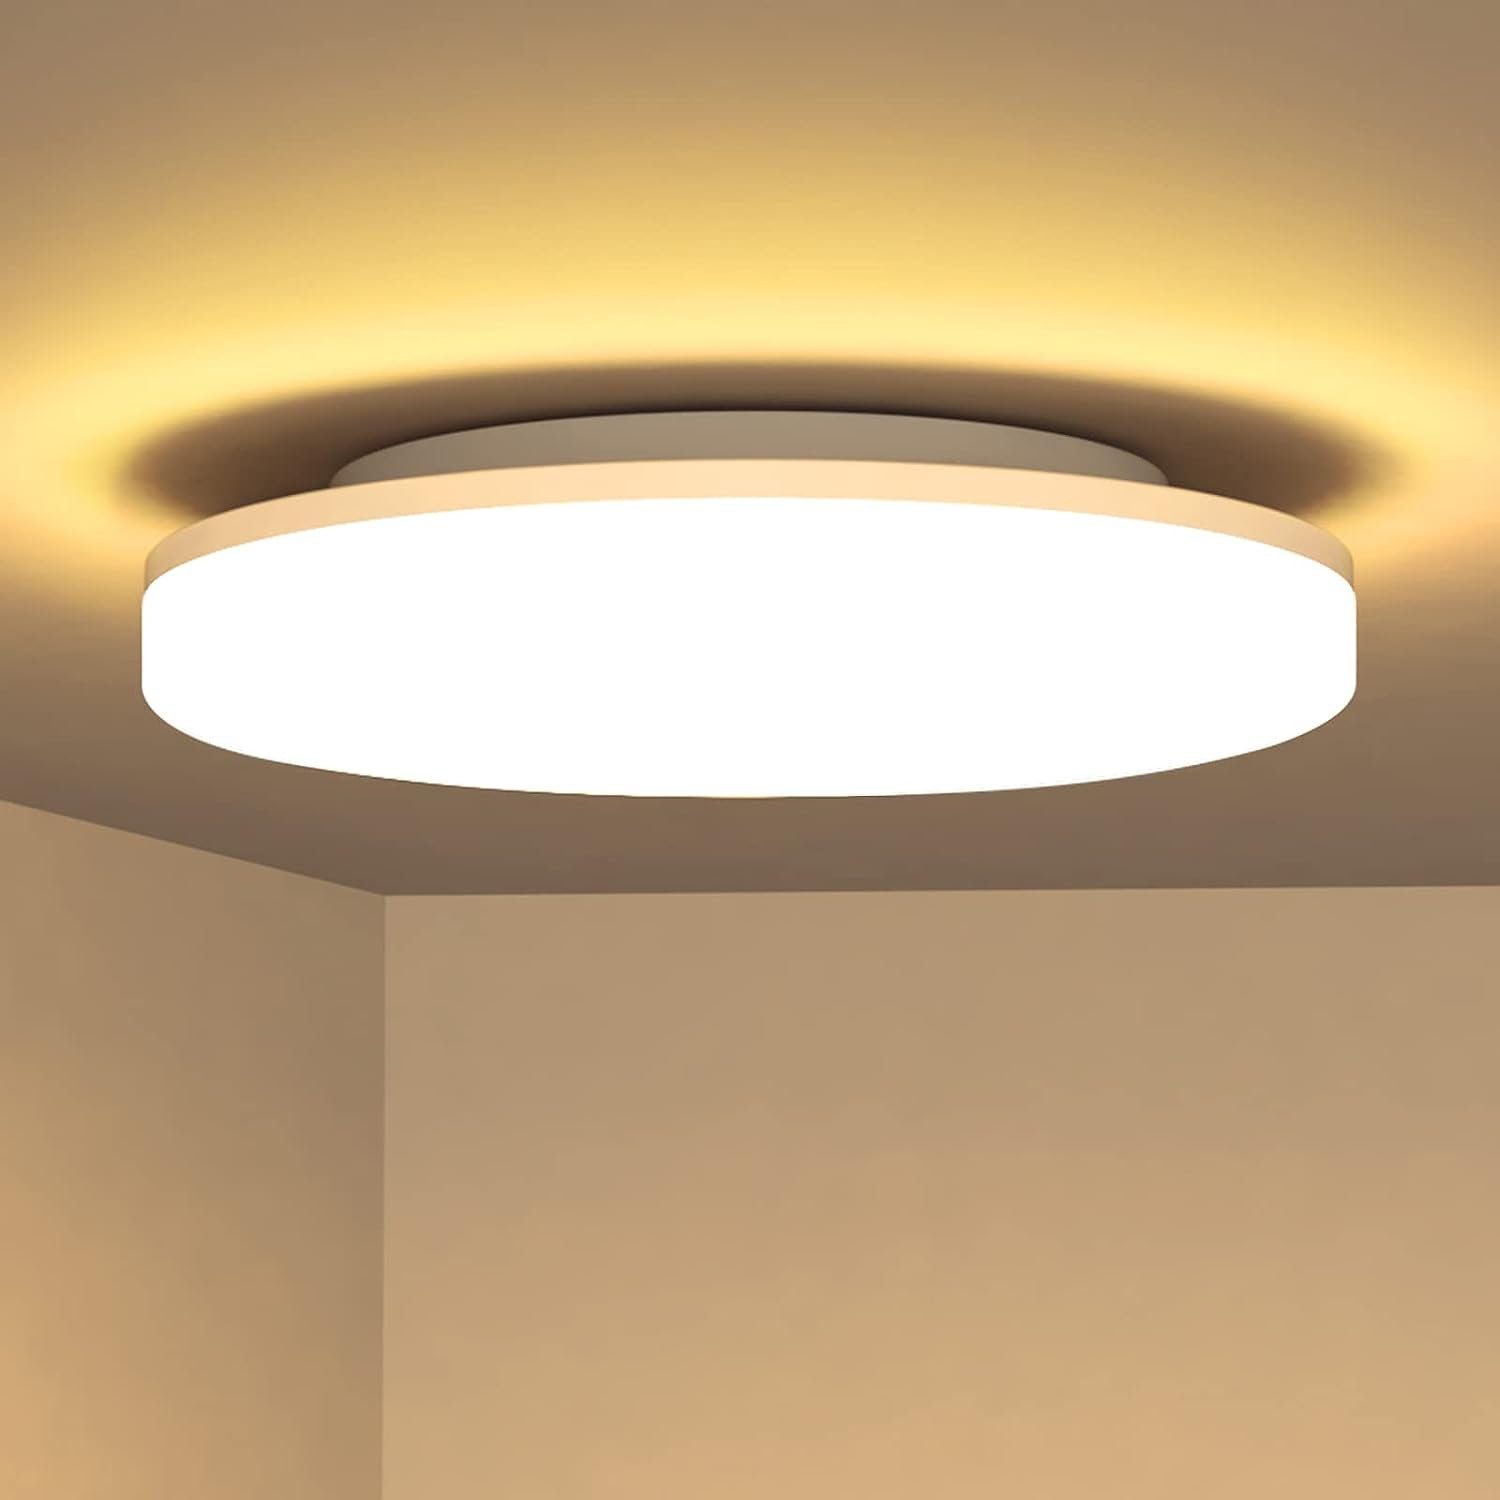 Nettlife LED Panel Deckenlampe Rund Badlampe Decke 24W 2700K Badezimmer, IP54 Wasserdicht, LED fest integriert, Warmweiß, für Schlafzimmer Flur Küche Wohnzimmer Balkon